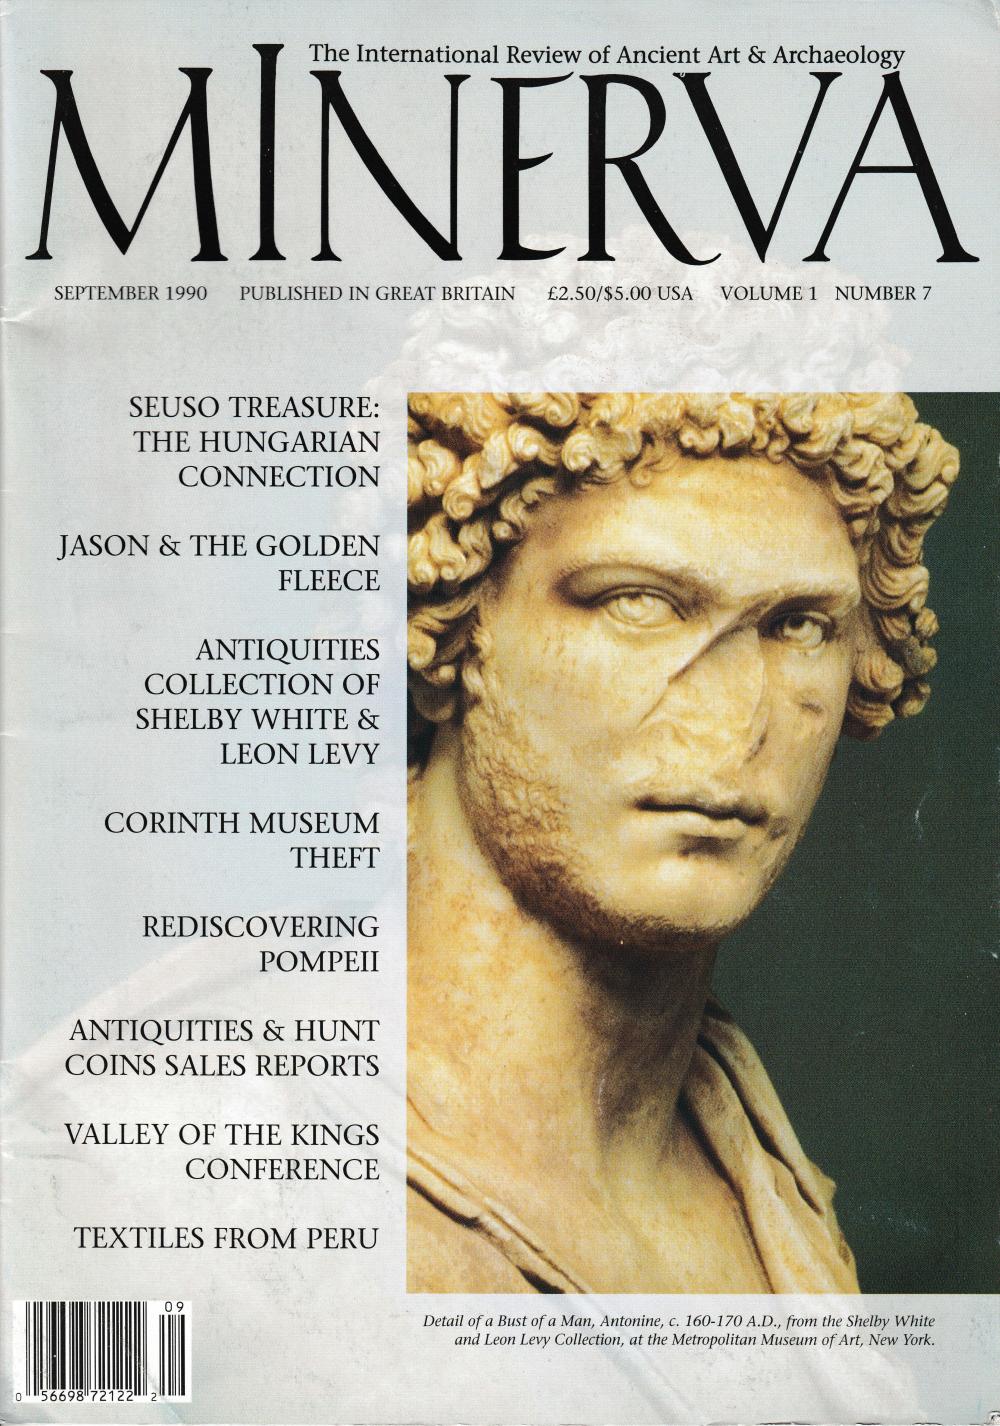 The journal Mine1.	rva, September 1990 